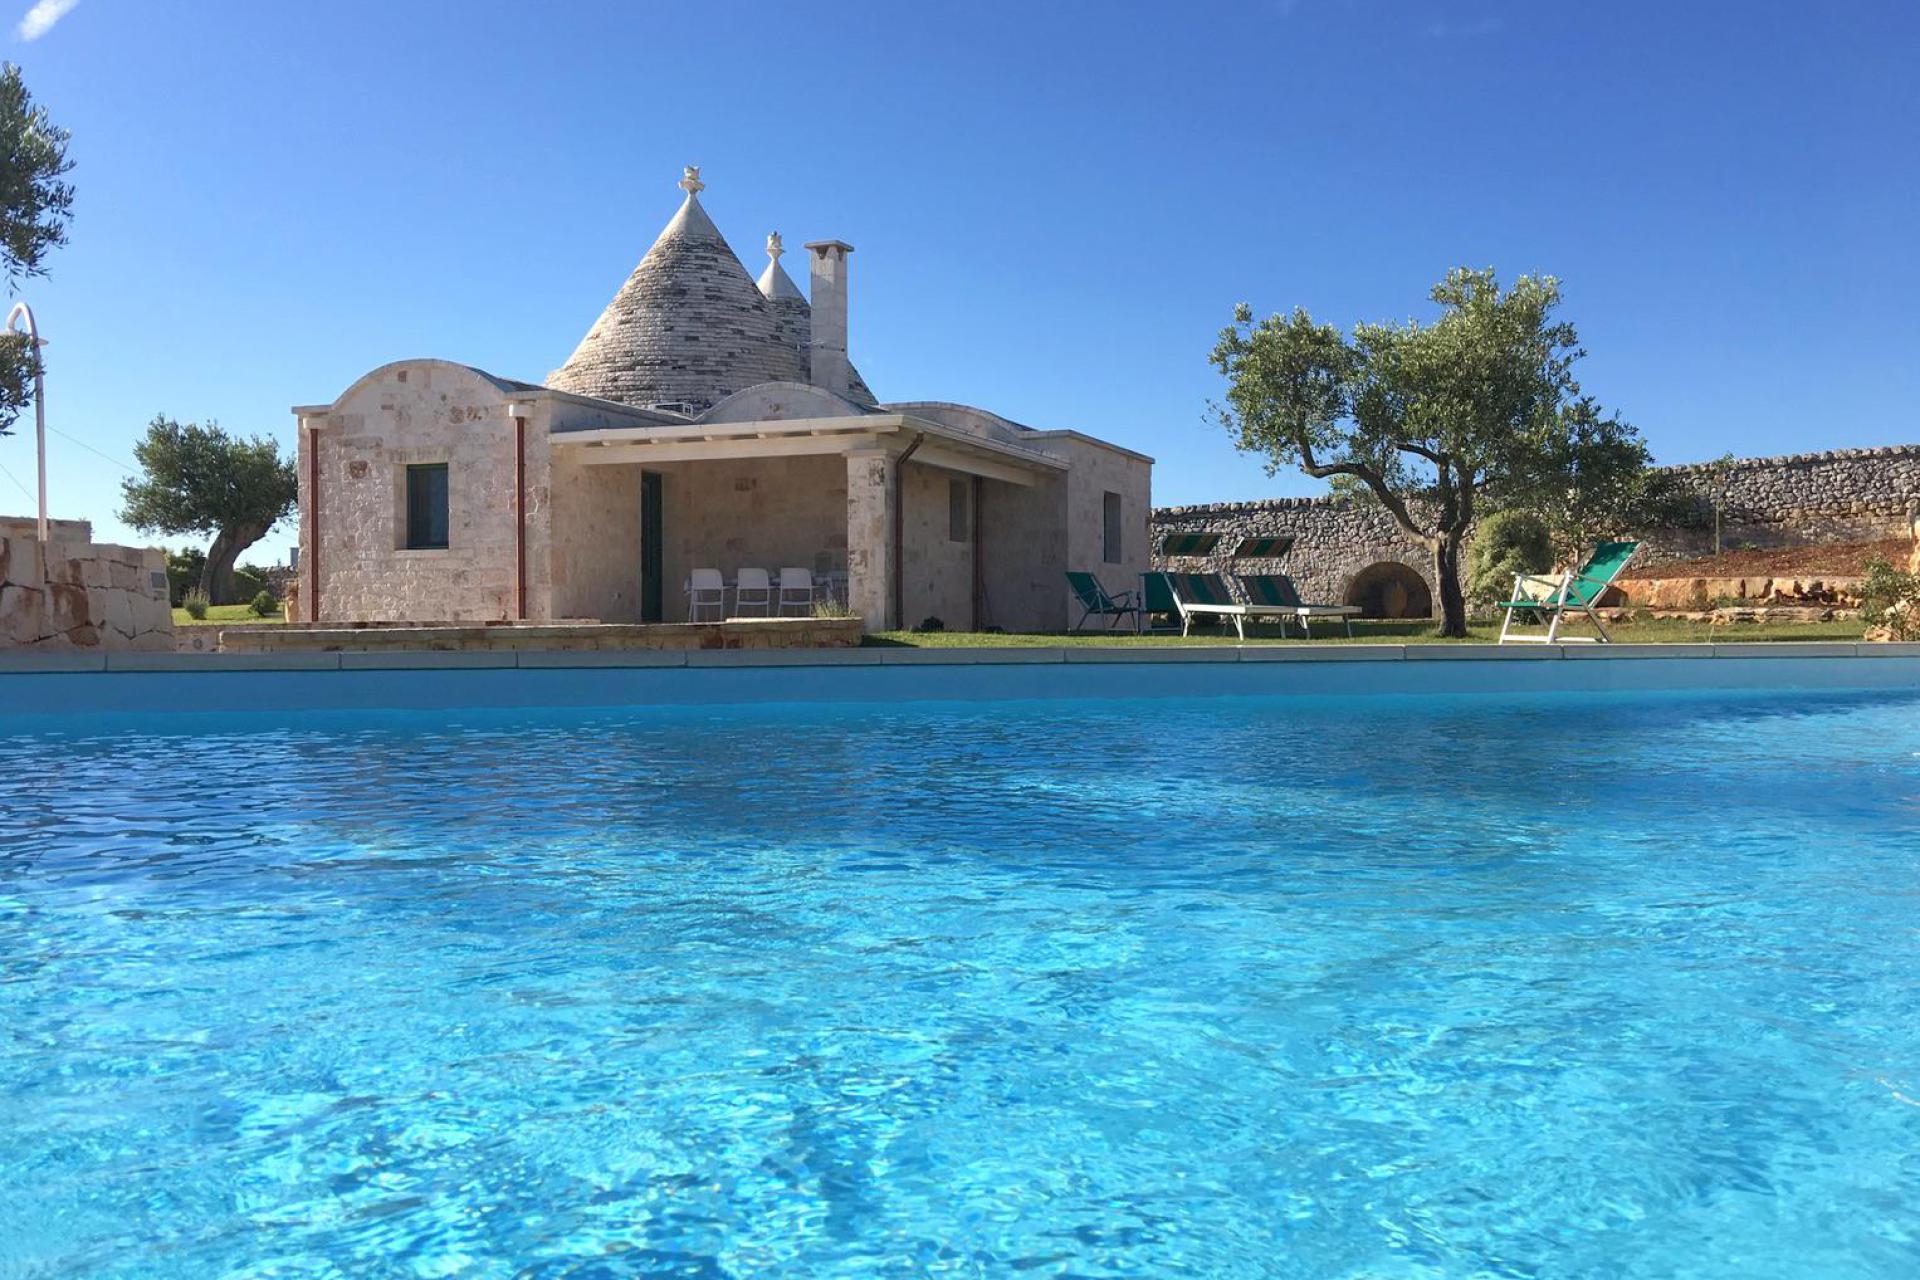 Prachtige verbouwde trullo met privé zwembad